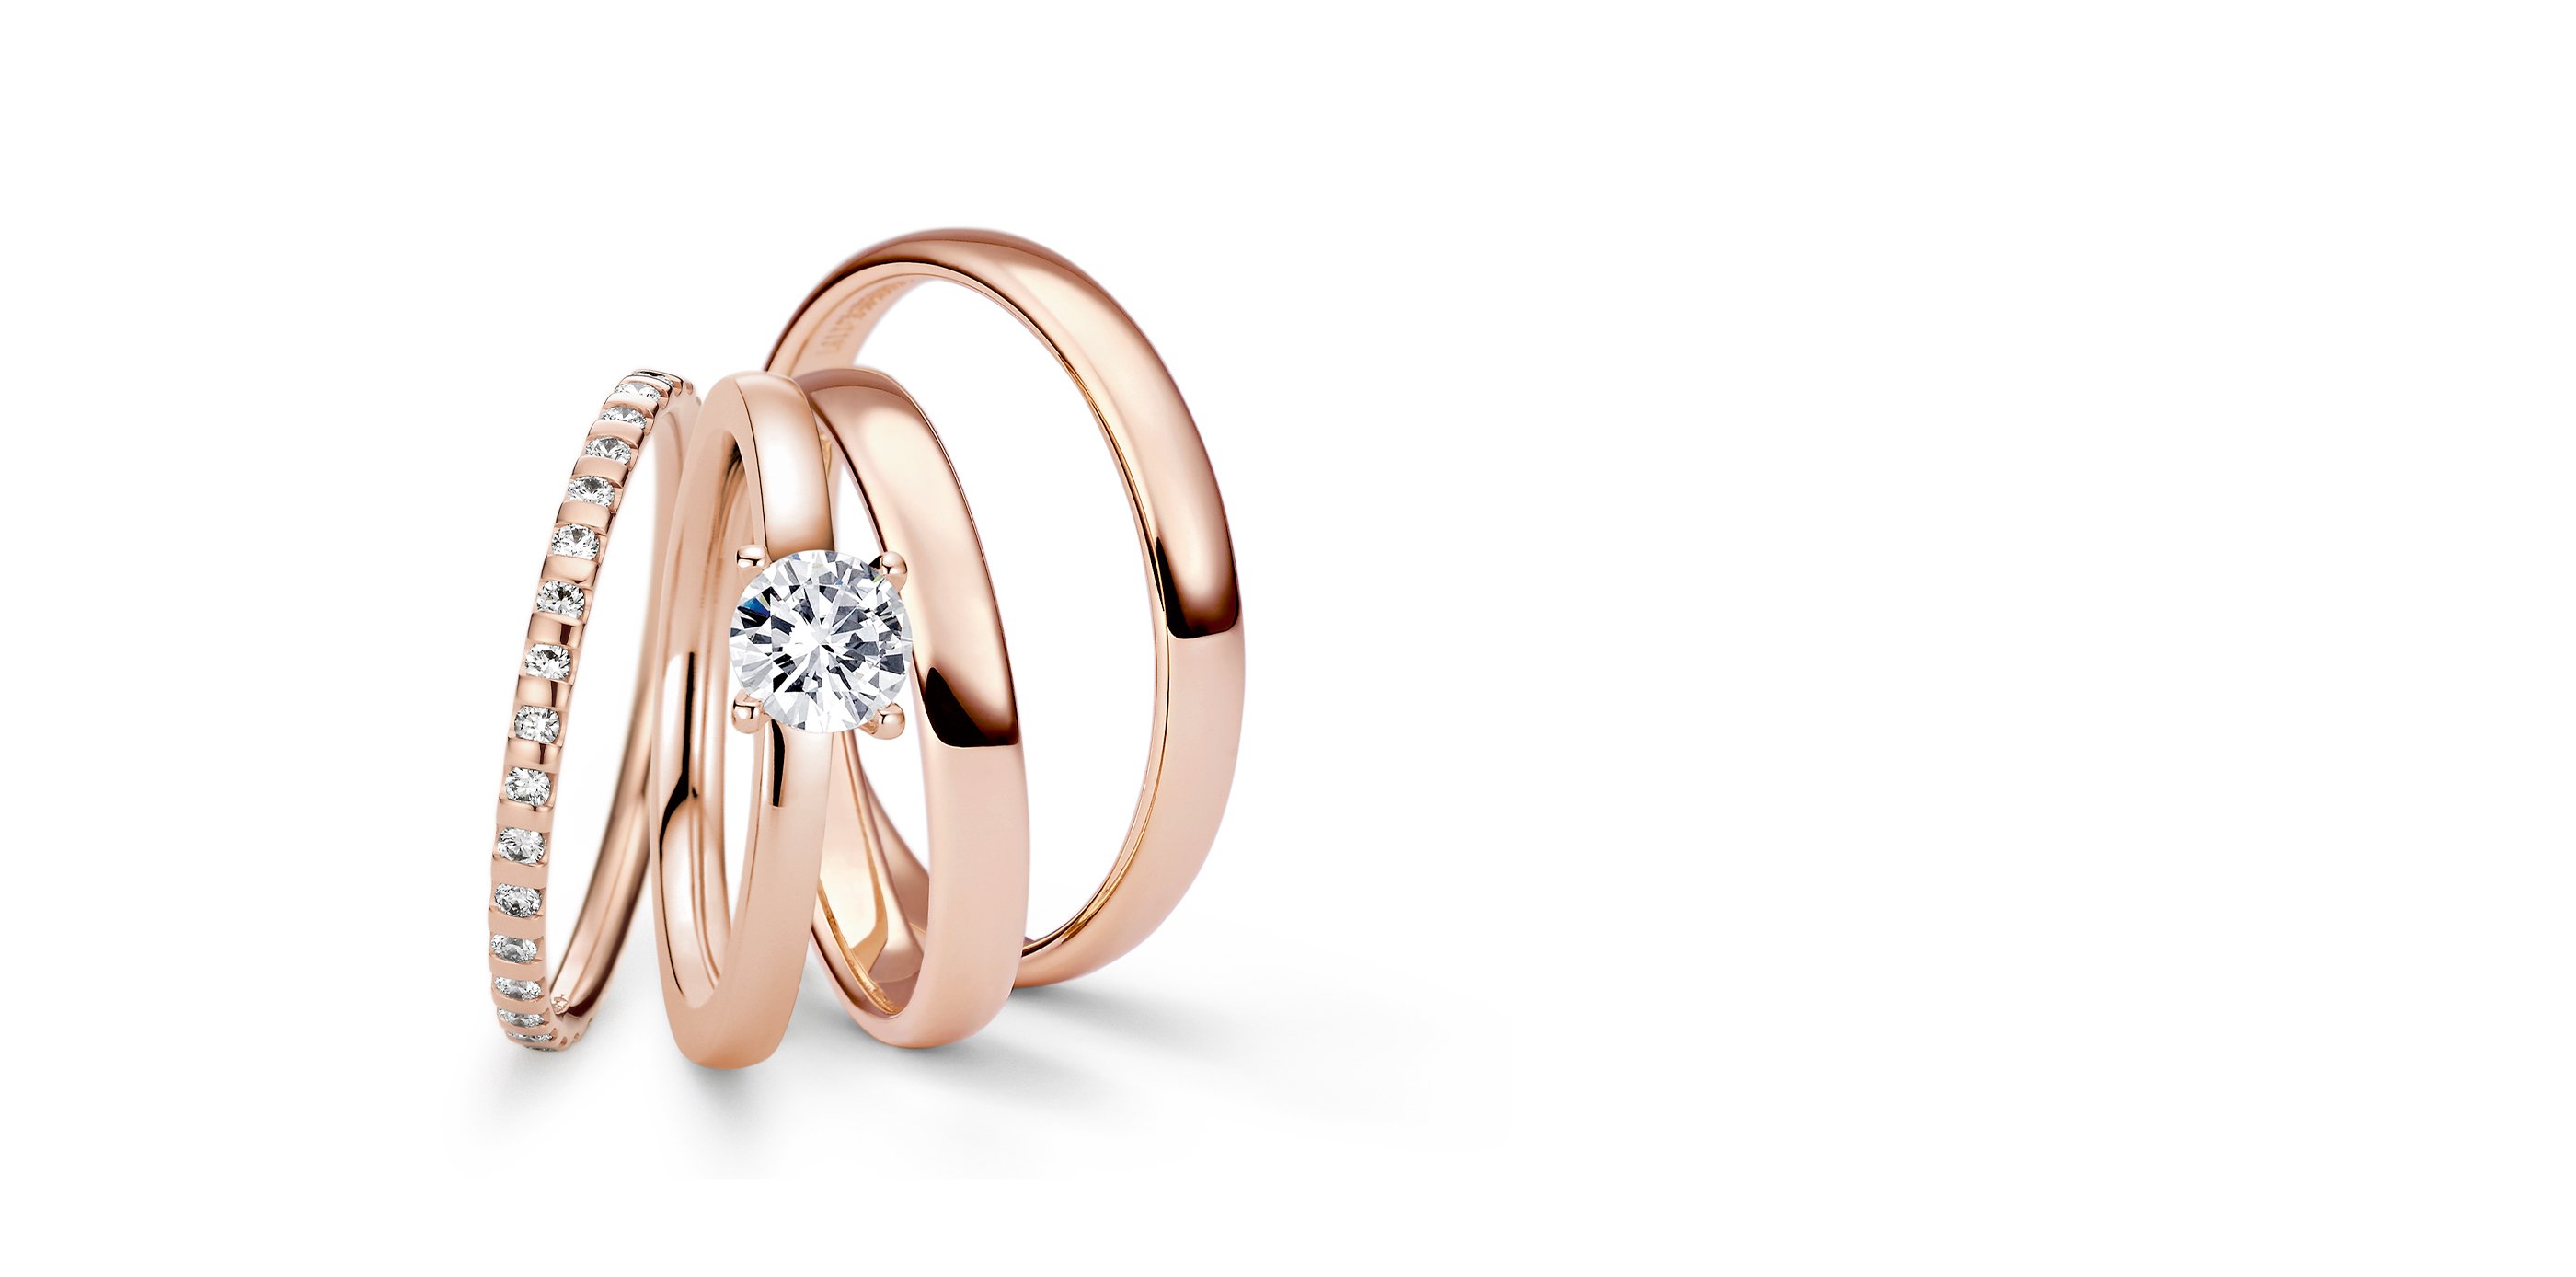 Niessing – Wedding Rings, Engagement Rings, Tension Rings